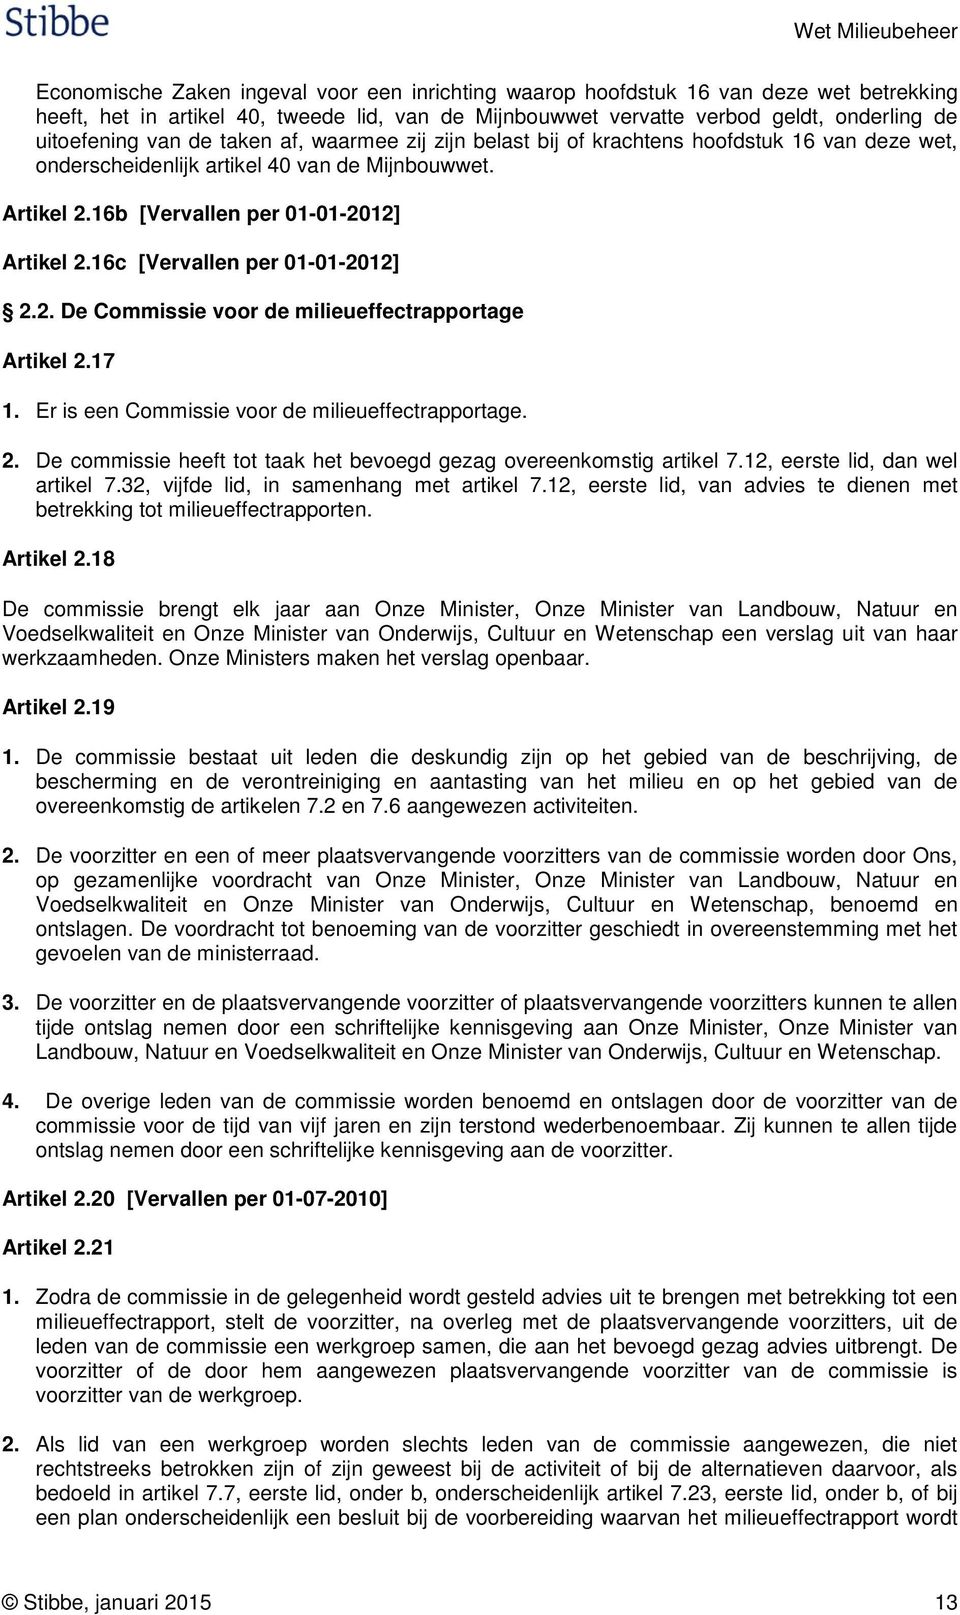 16c [Vervallen per 01-01-2012] 2.2. De Commissie voor de milieueffectrapportage Artikel 2.17 1. Er is een Commissie voor de milieueffectrapportage. 2. De commissie heeft tot taak het bevoegd gezag overeenkomstig artikel 7.